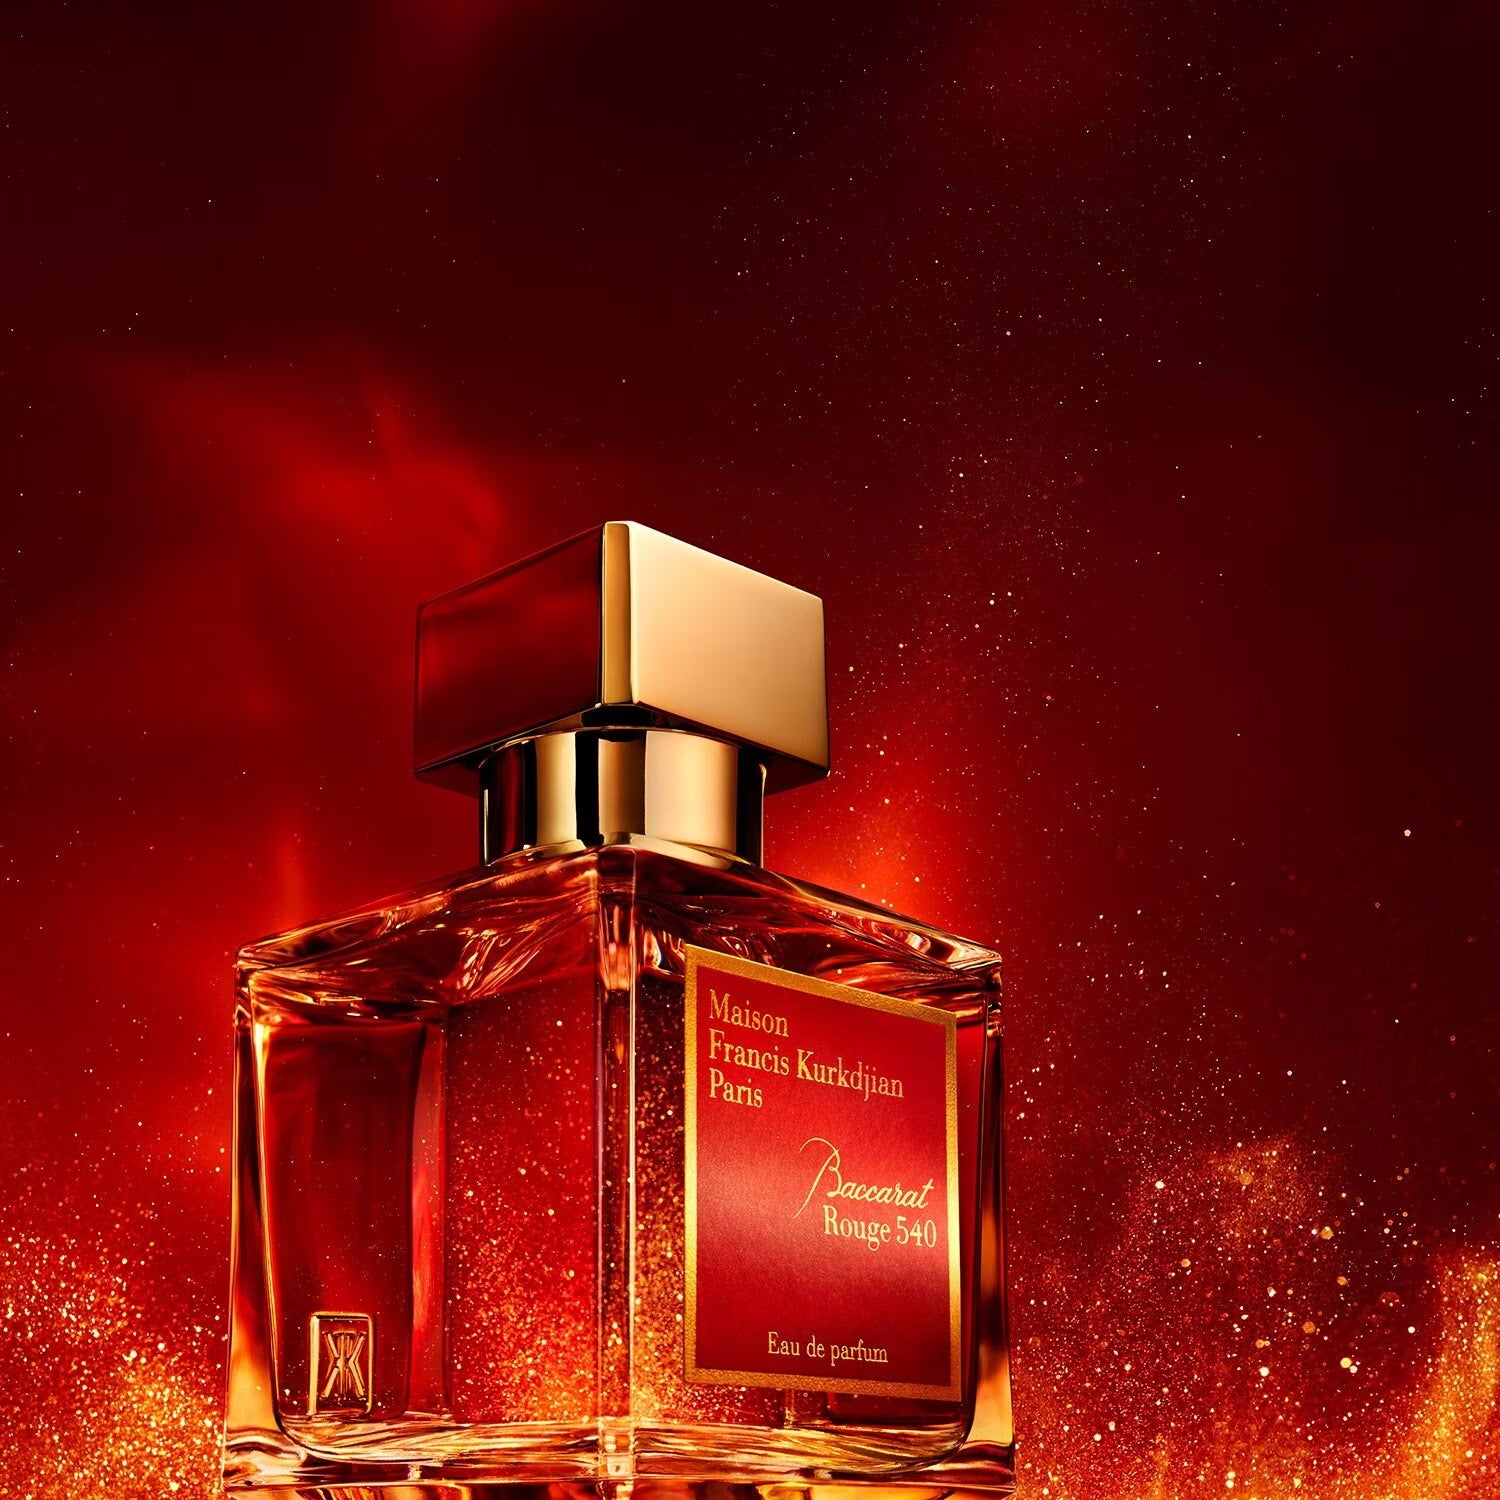 Maison Francis Kurkdjian Baccarat Rouge 540 - Extrait de Parfum